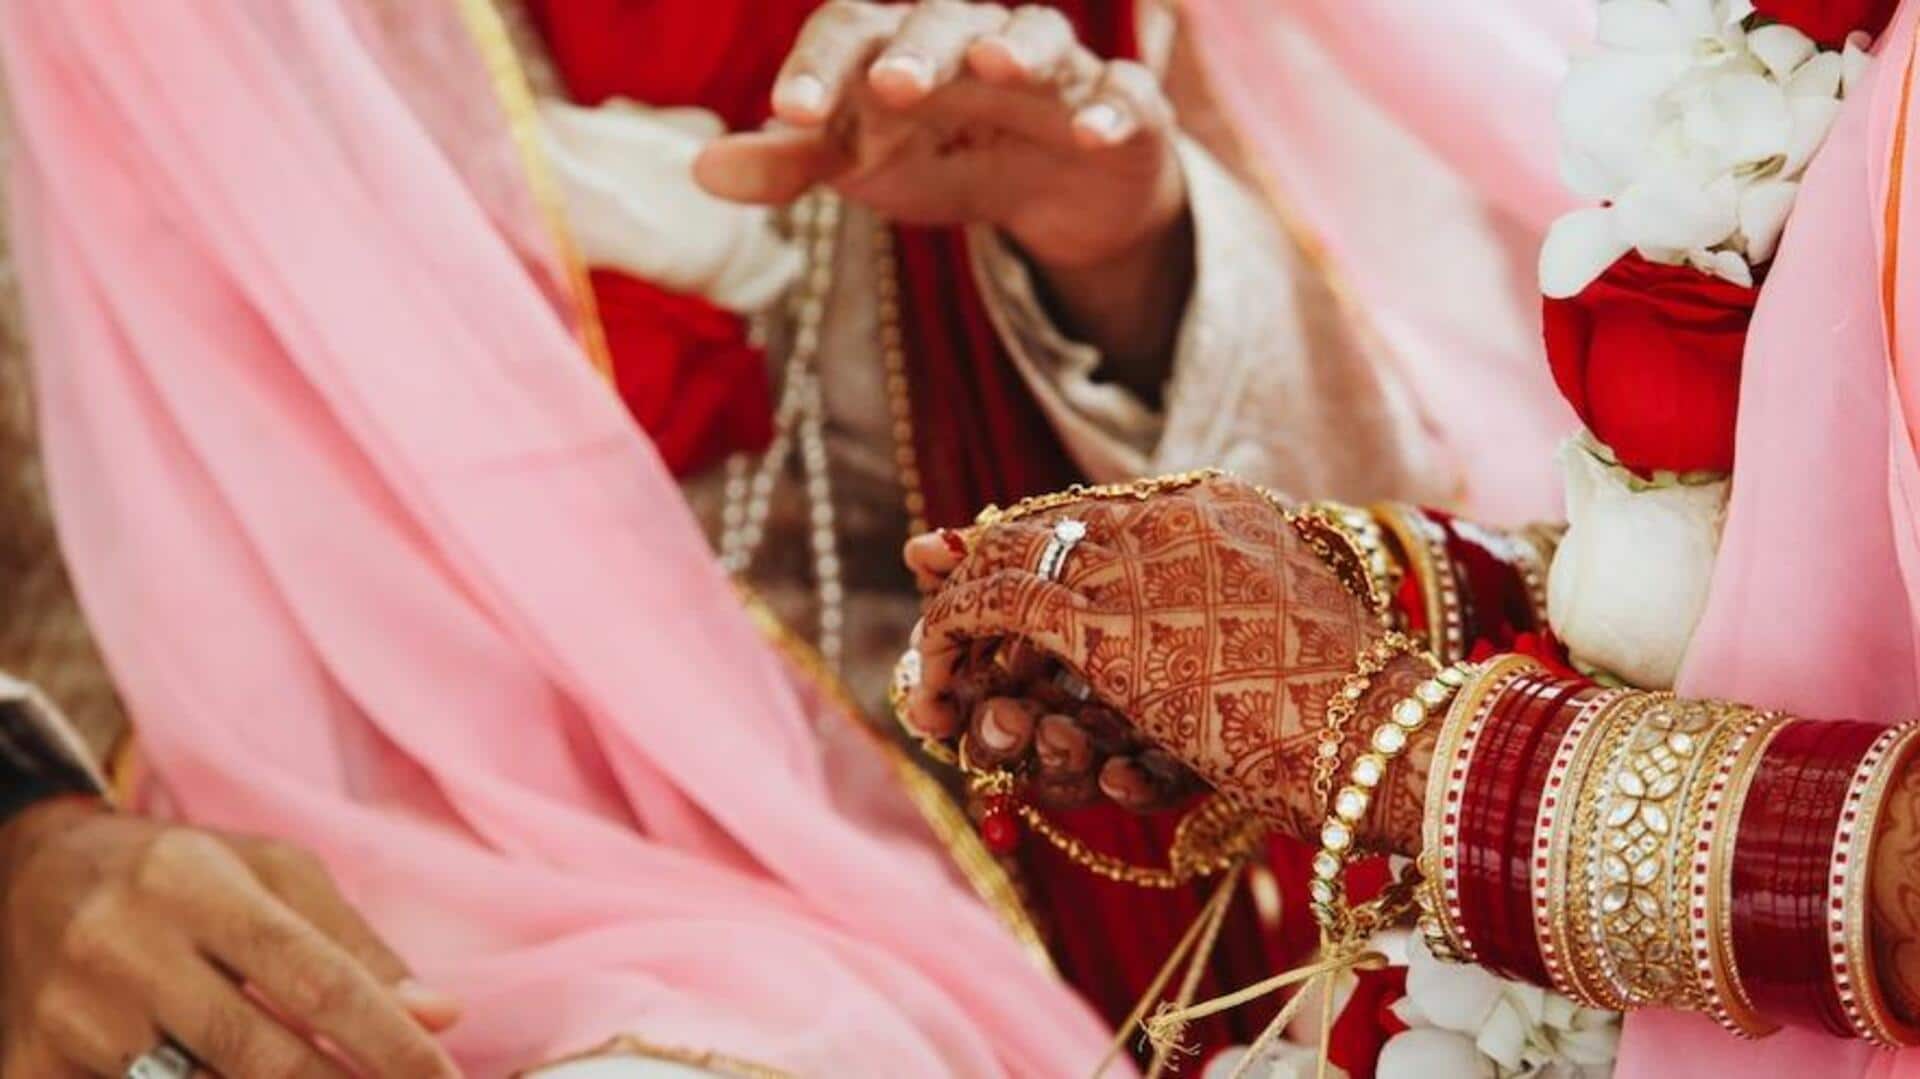 उत्तर प्रदेश: दुल्हन के 12वीं कक्षा में नंबर कम आने पर दूल्हे ने तोड़ दी शादी